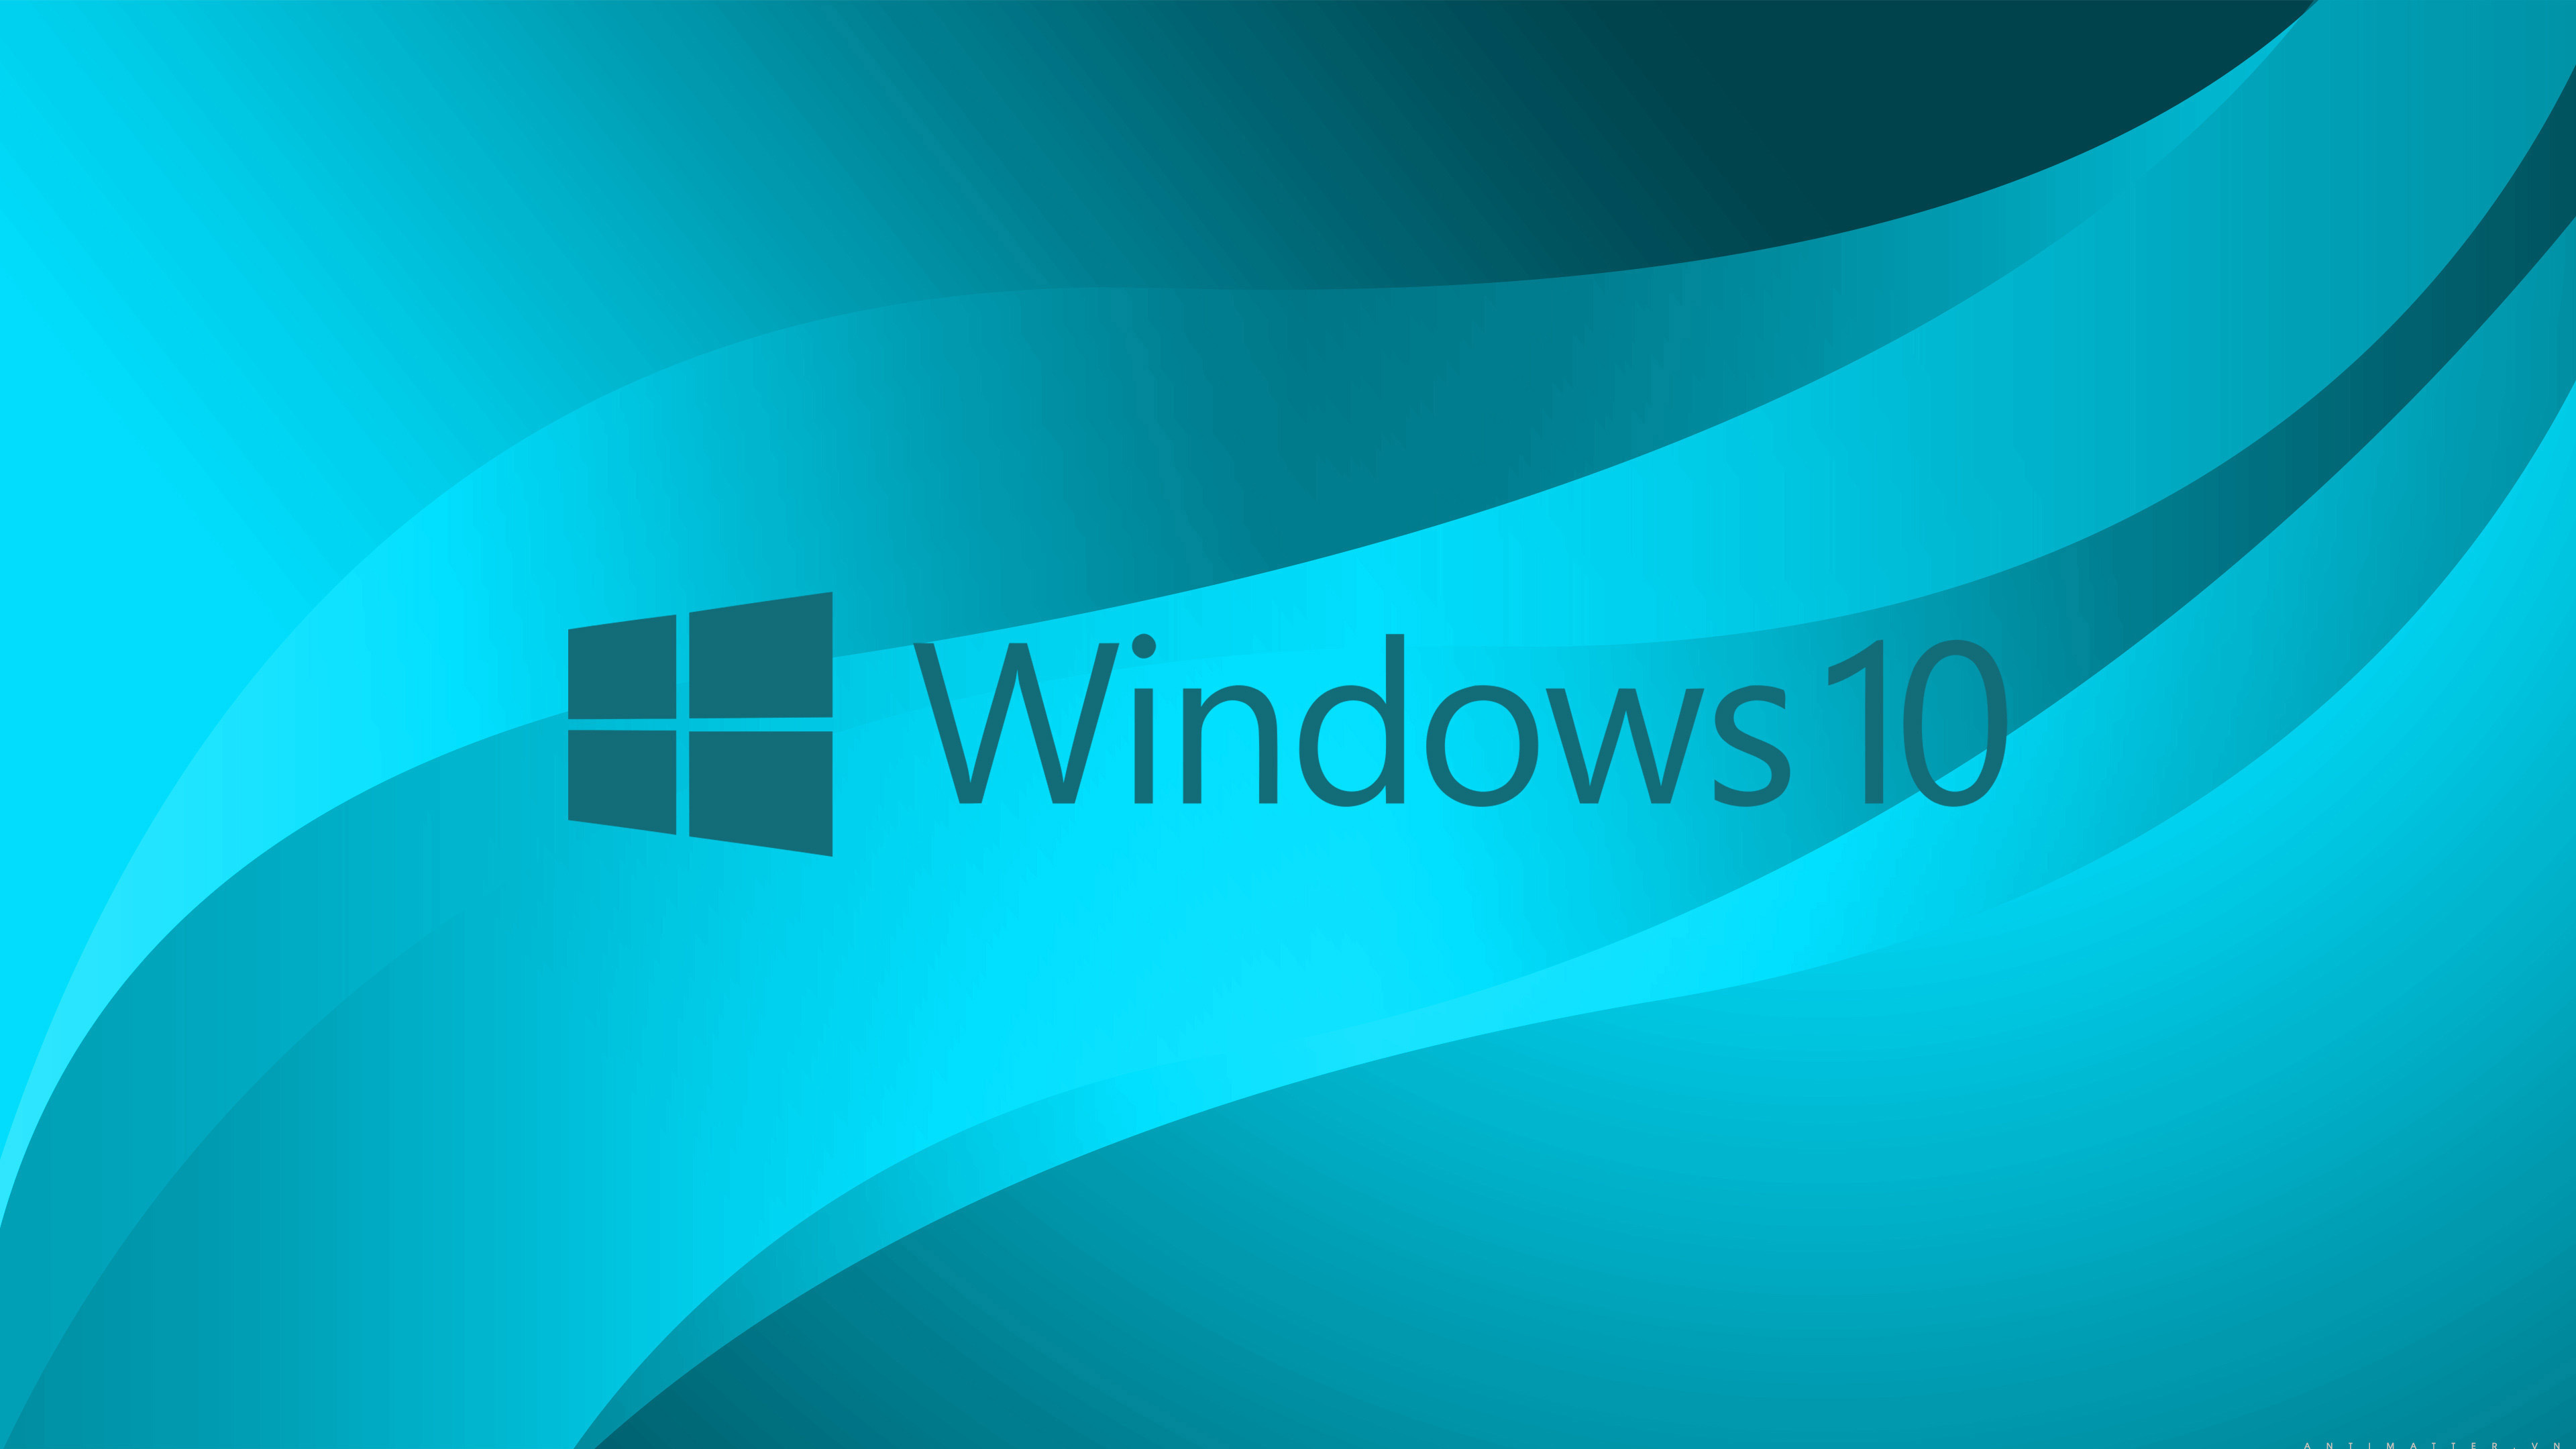 Cách làm giao diện Windows 10 đẹp hơn mà chỉ có dân chuyên mới biết